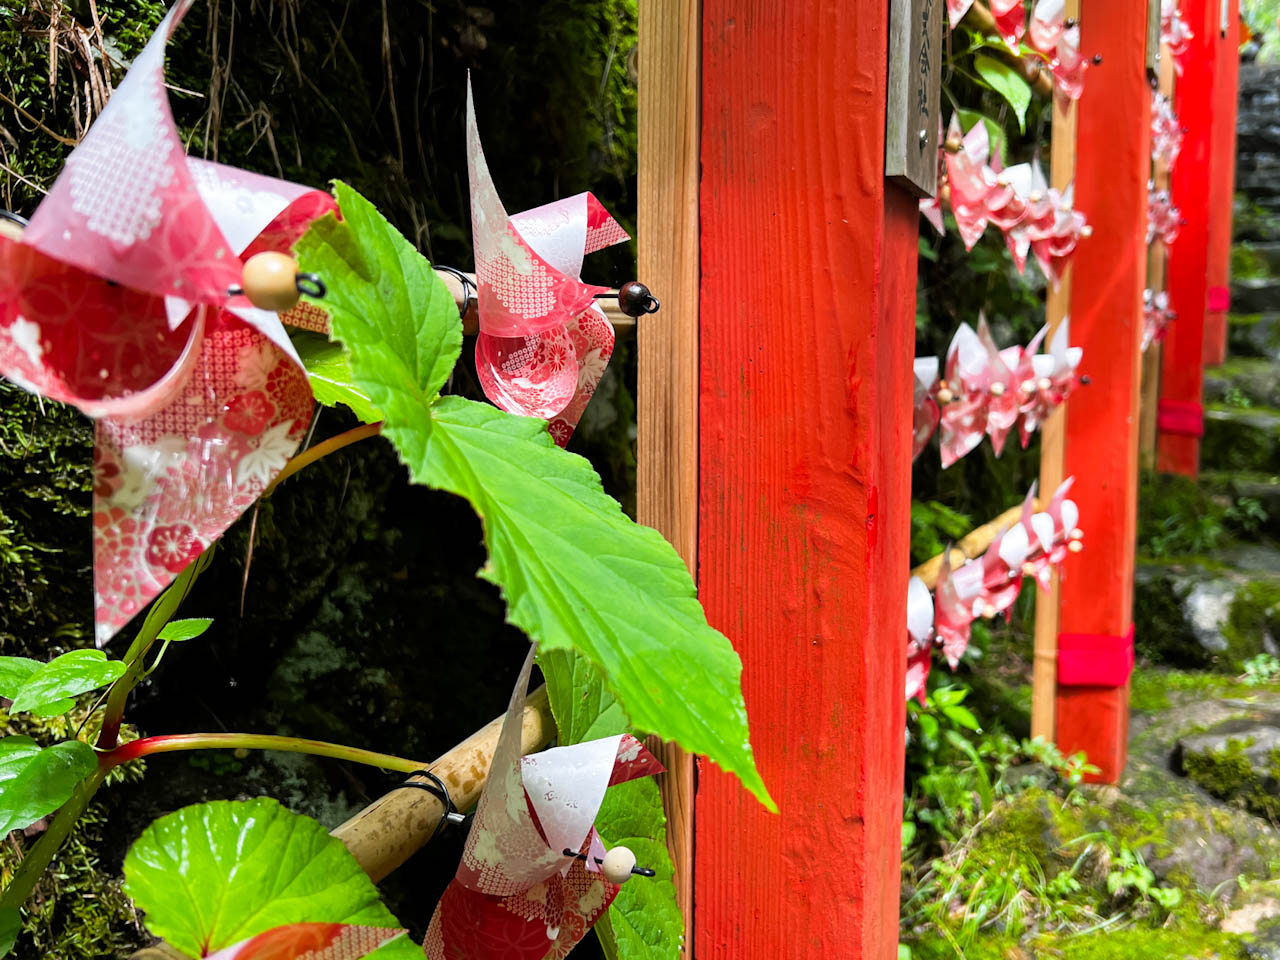 京都らしい友禅柄をあしらった赤い風車が、朱色の柱と、緑の葉に映えて綺麗